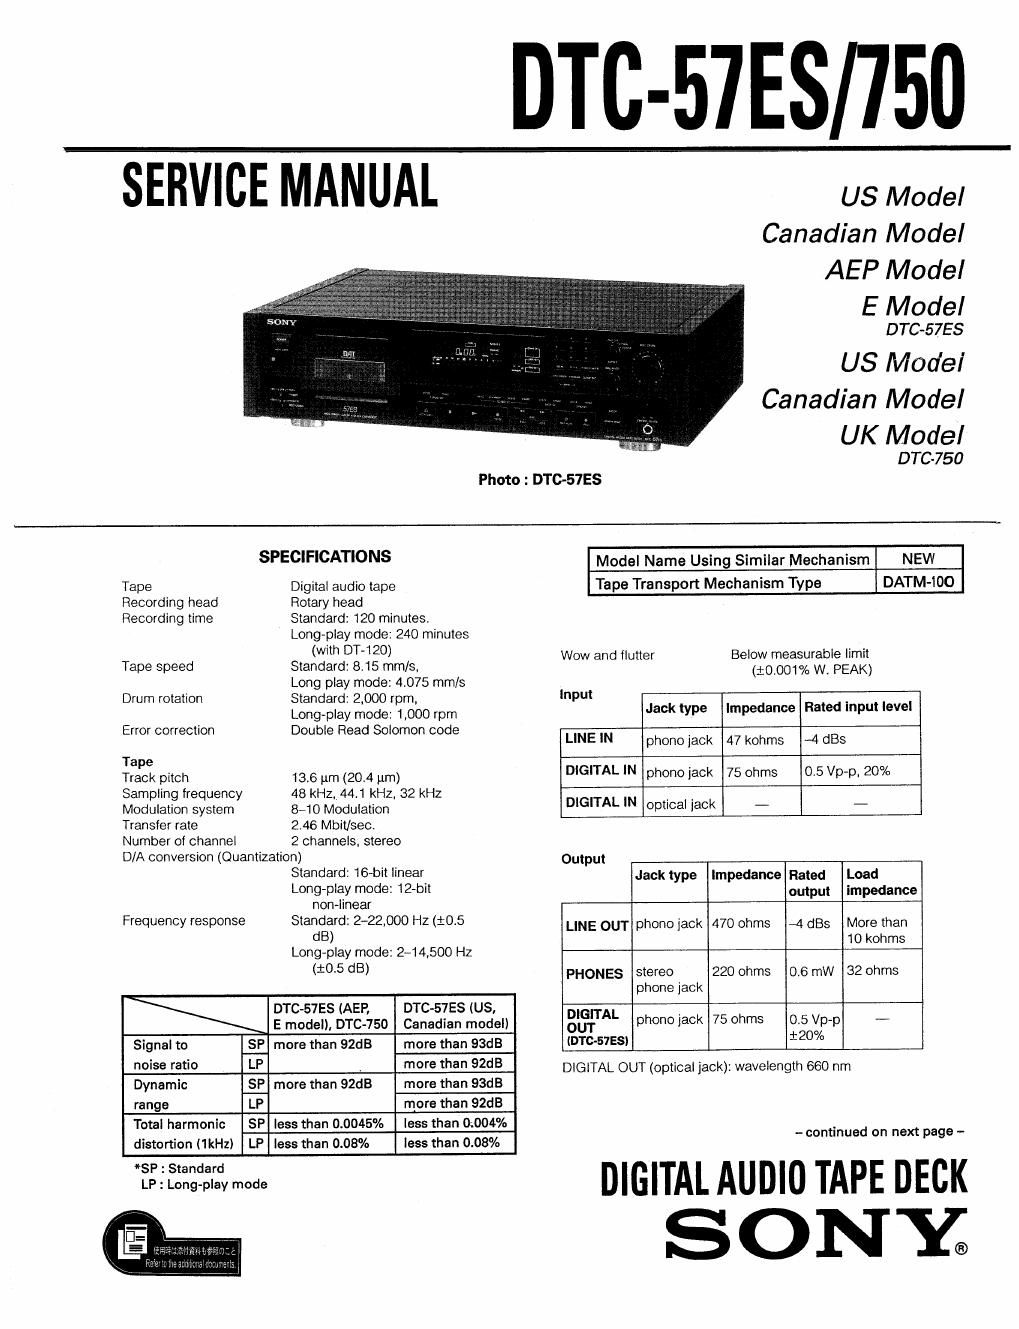 sony dtc 570 service manual